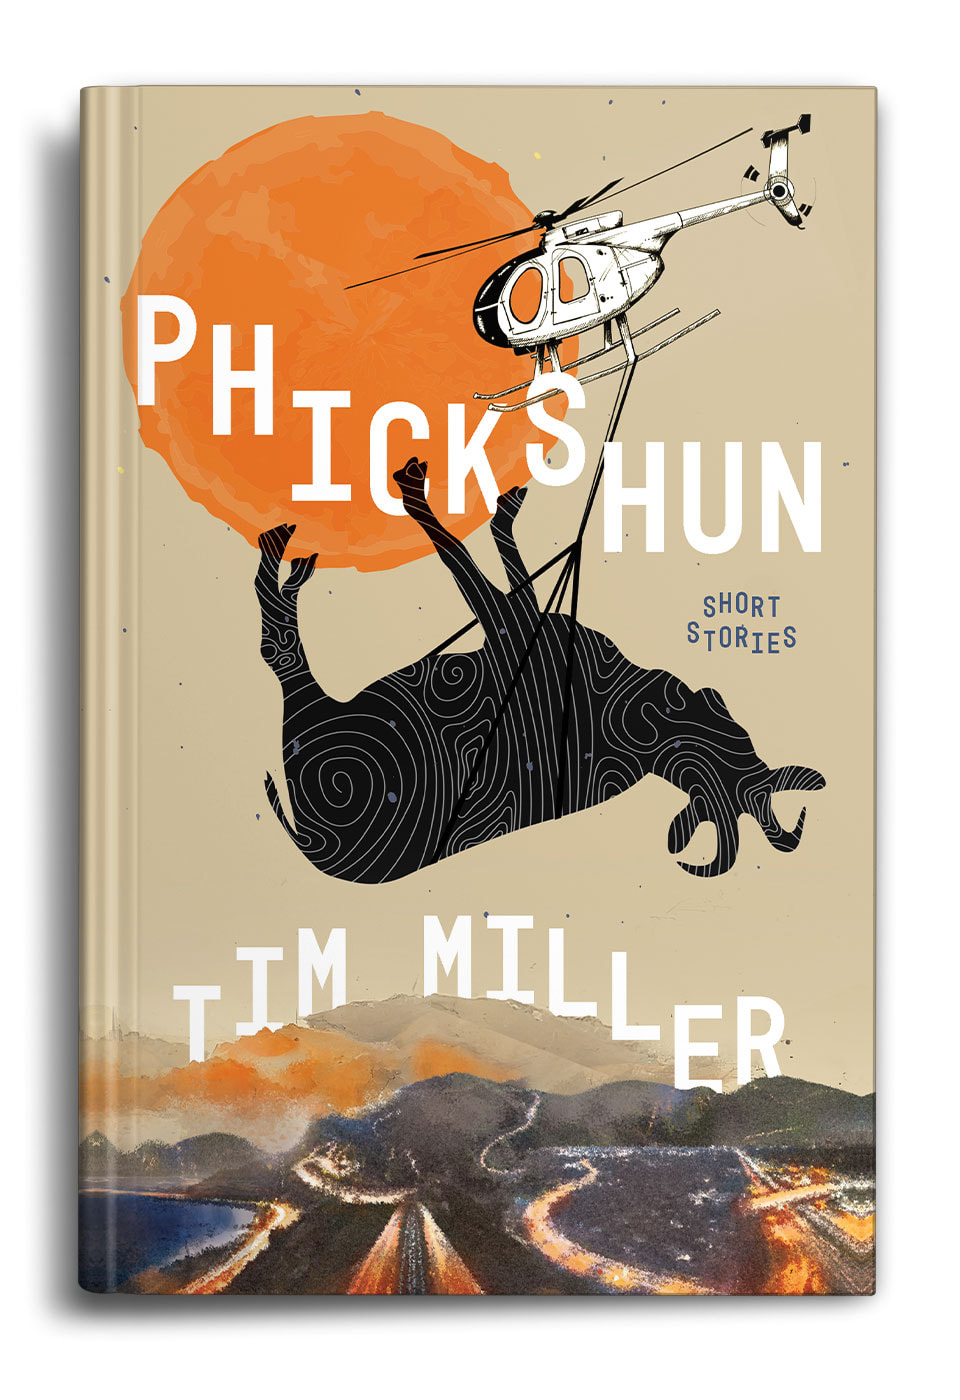 Phickshun-by-Tim-Miller